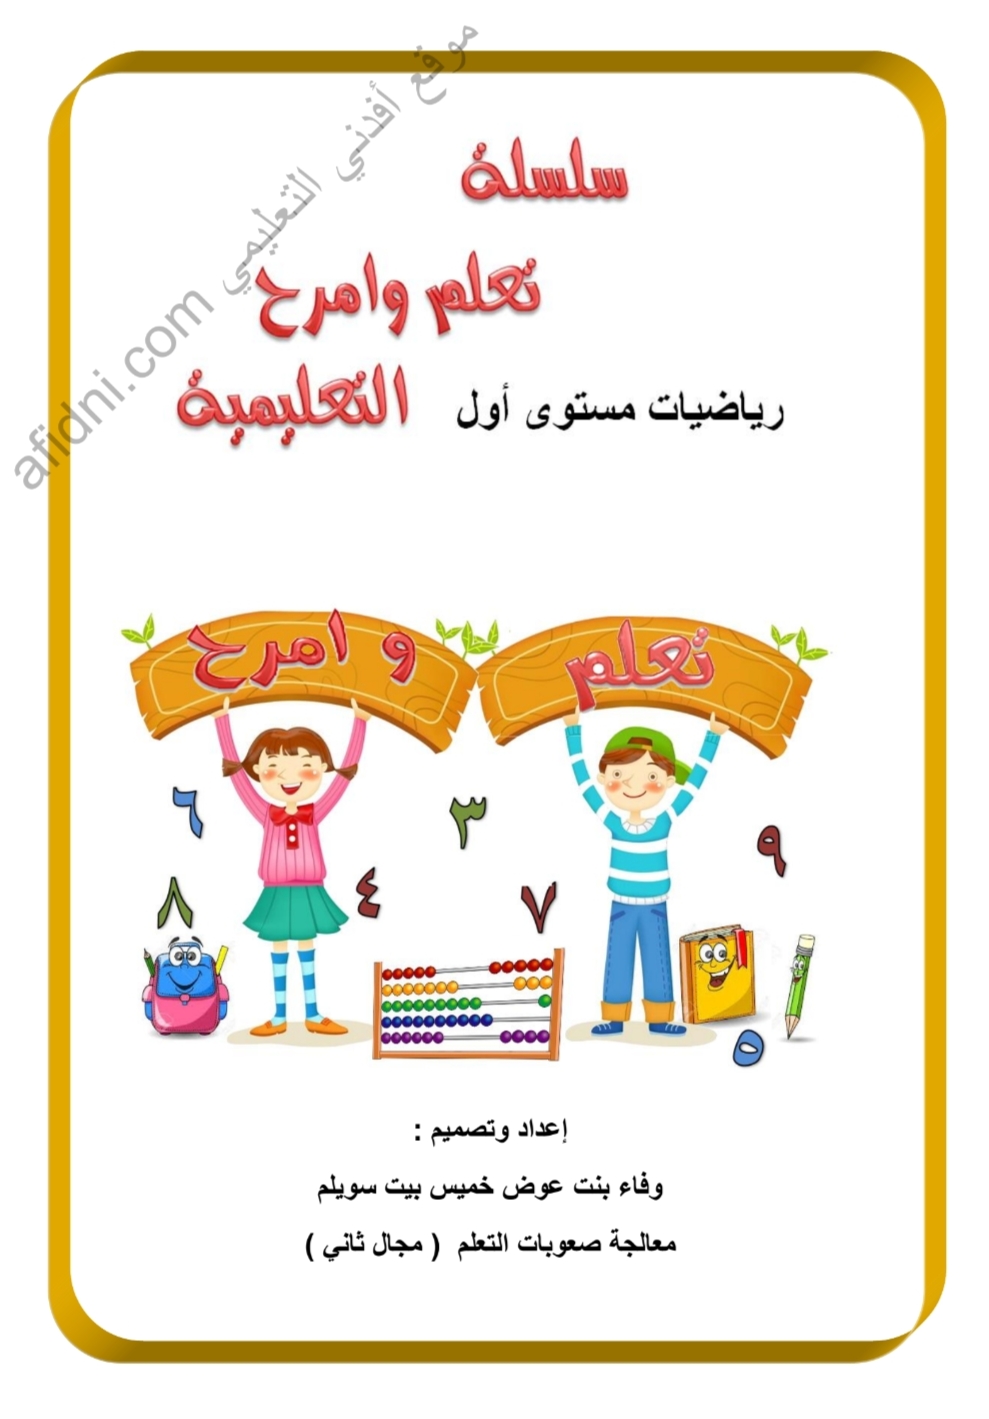 سلسلة تعلم وامرح في الرياضيات للصف الأول منهج سلطنة عمان